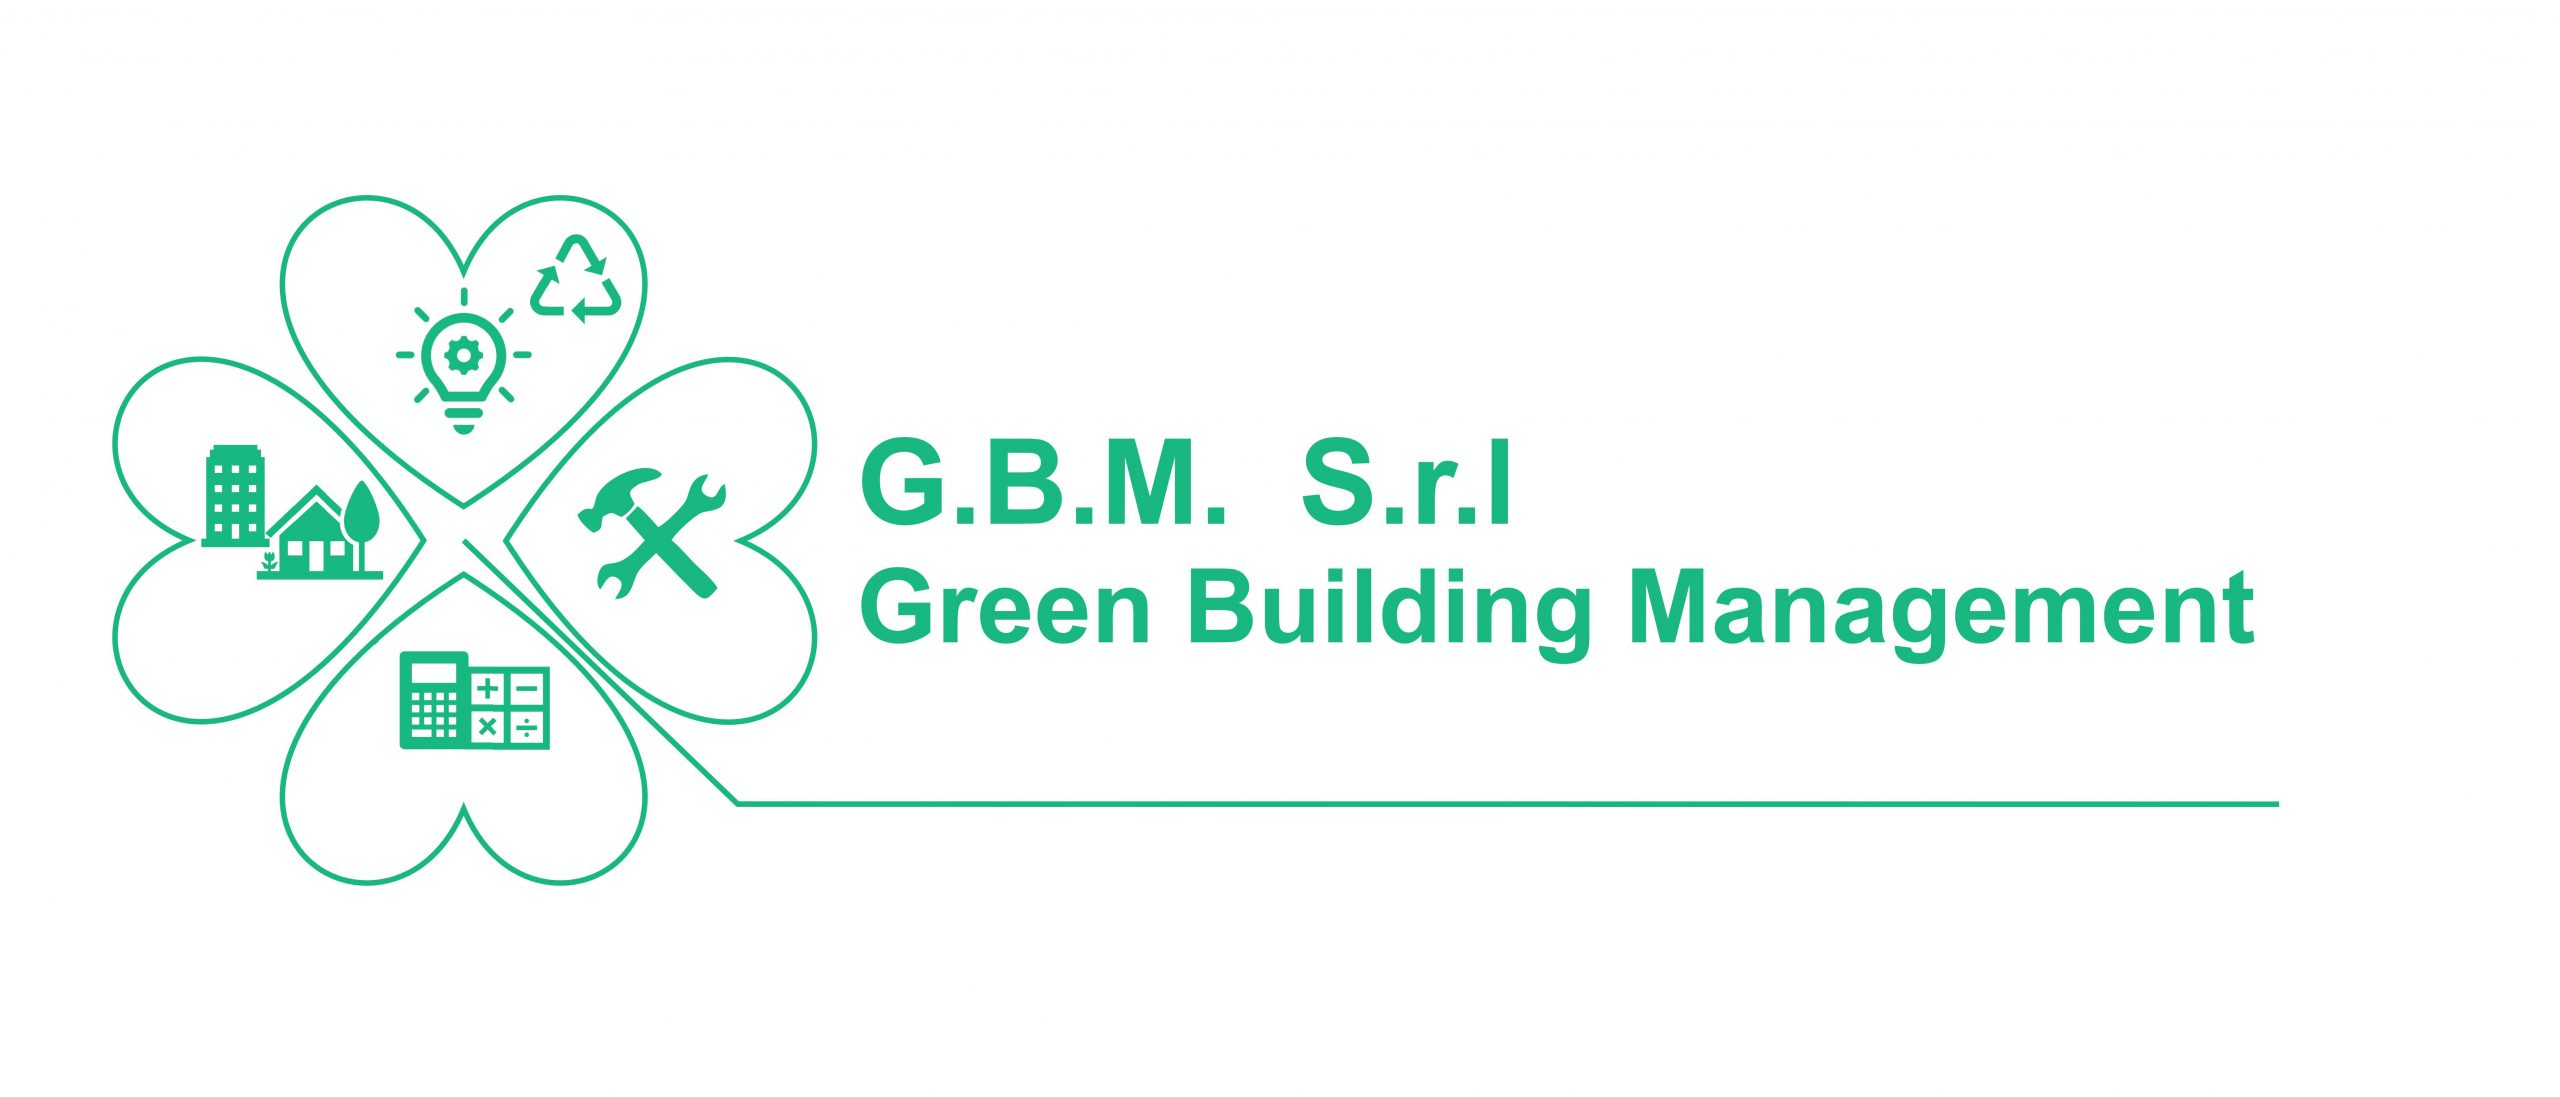 Green Building Management amministrazione condominiale 